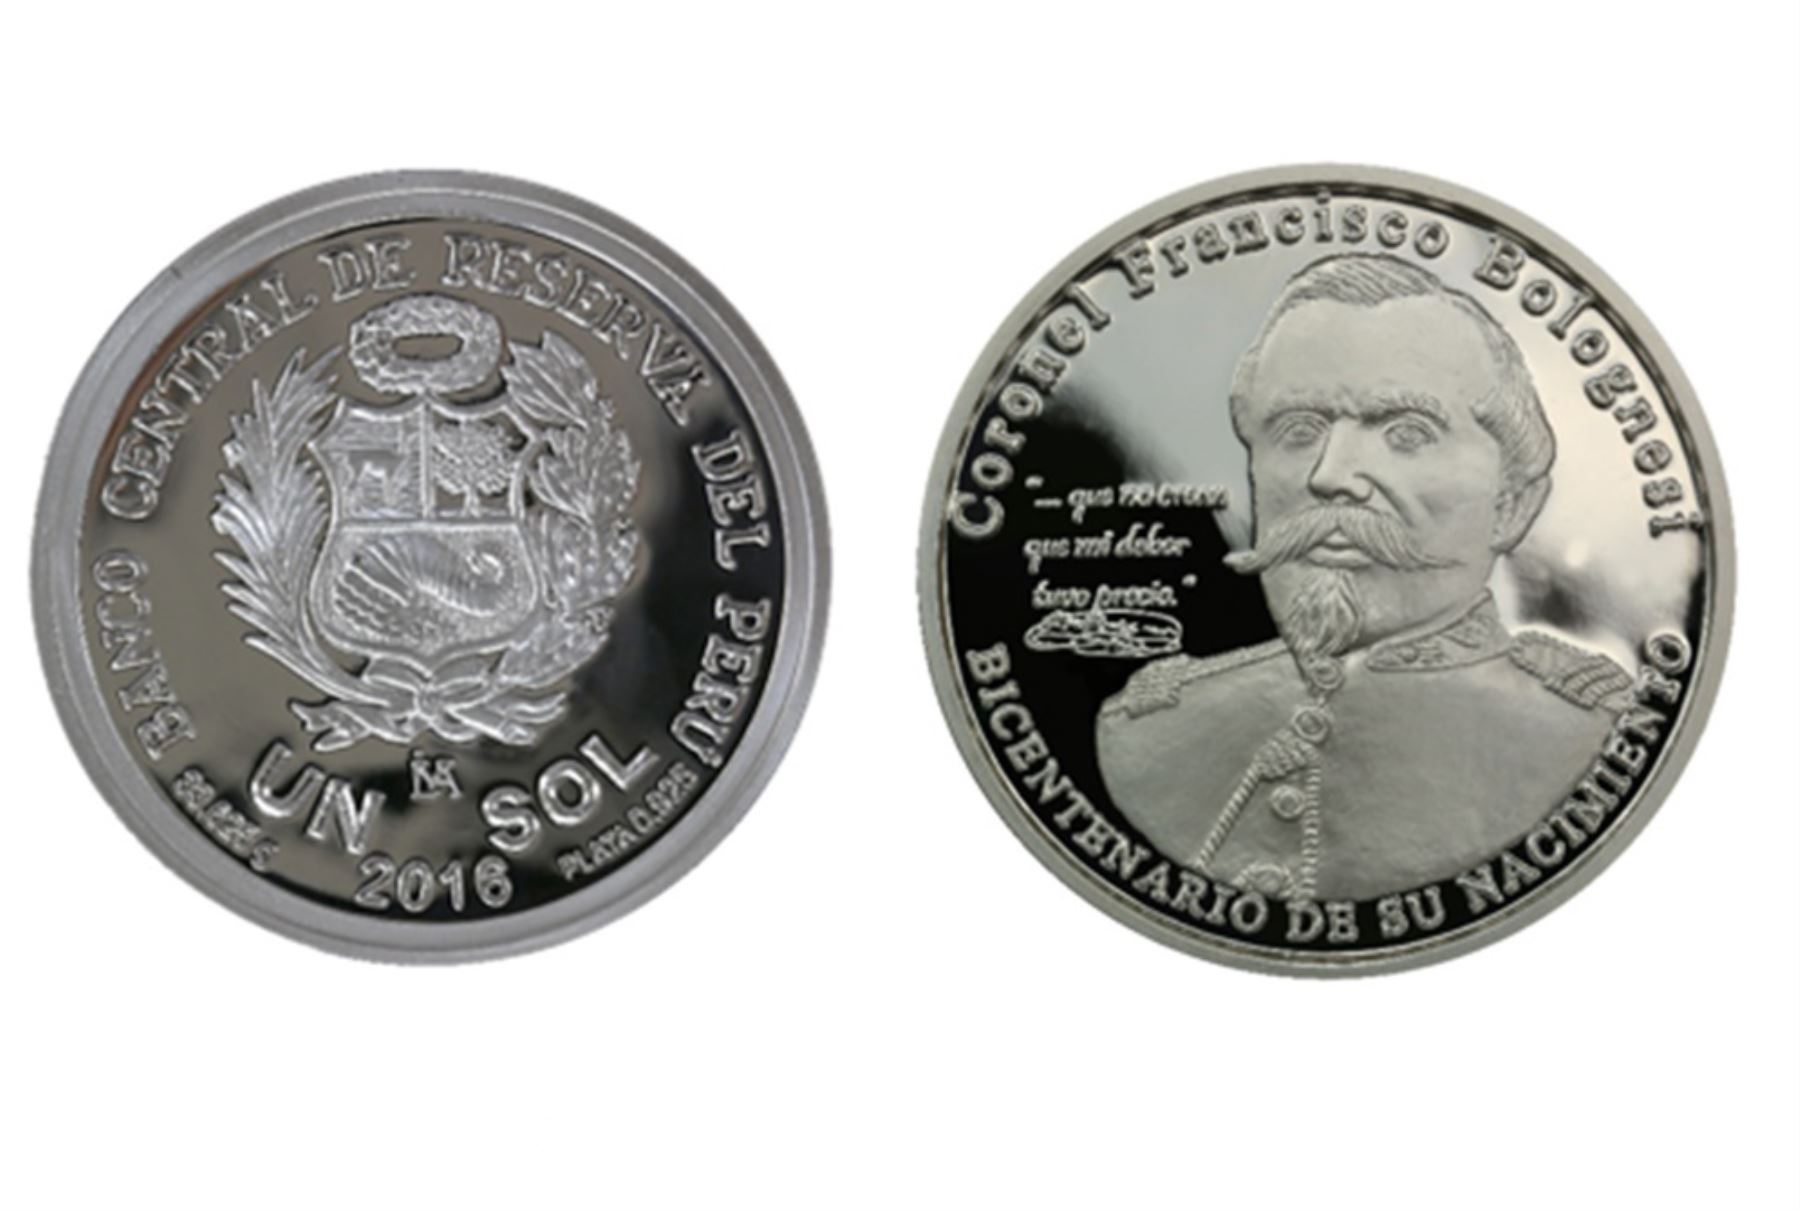 Moneda alusiva al bicentenario del nacimiento del Coronel Francisco Bolognesi. Fuente: BCR.